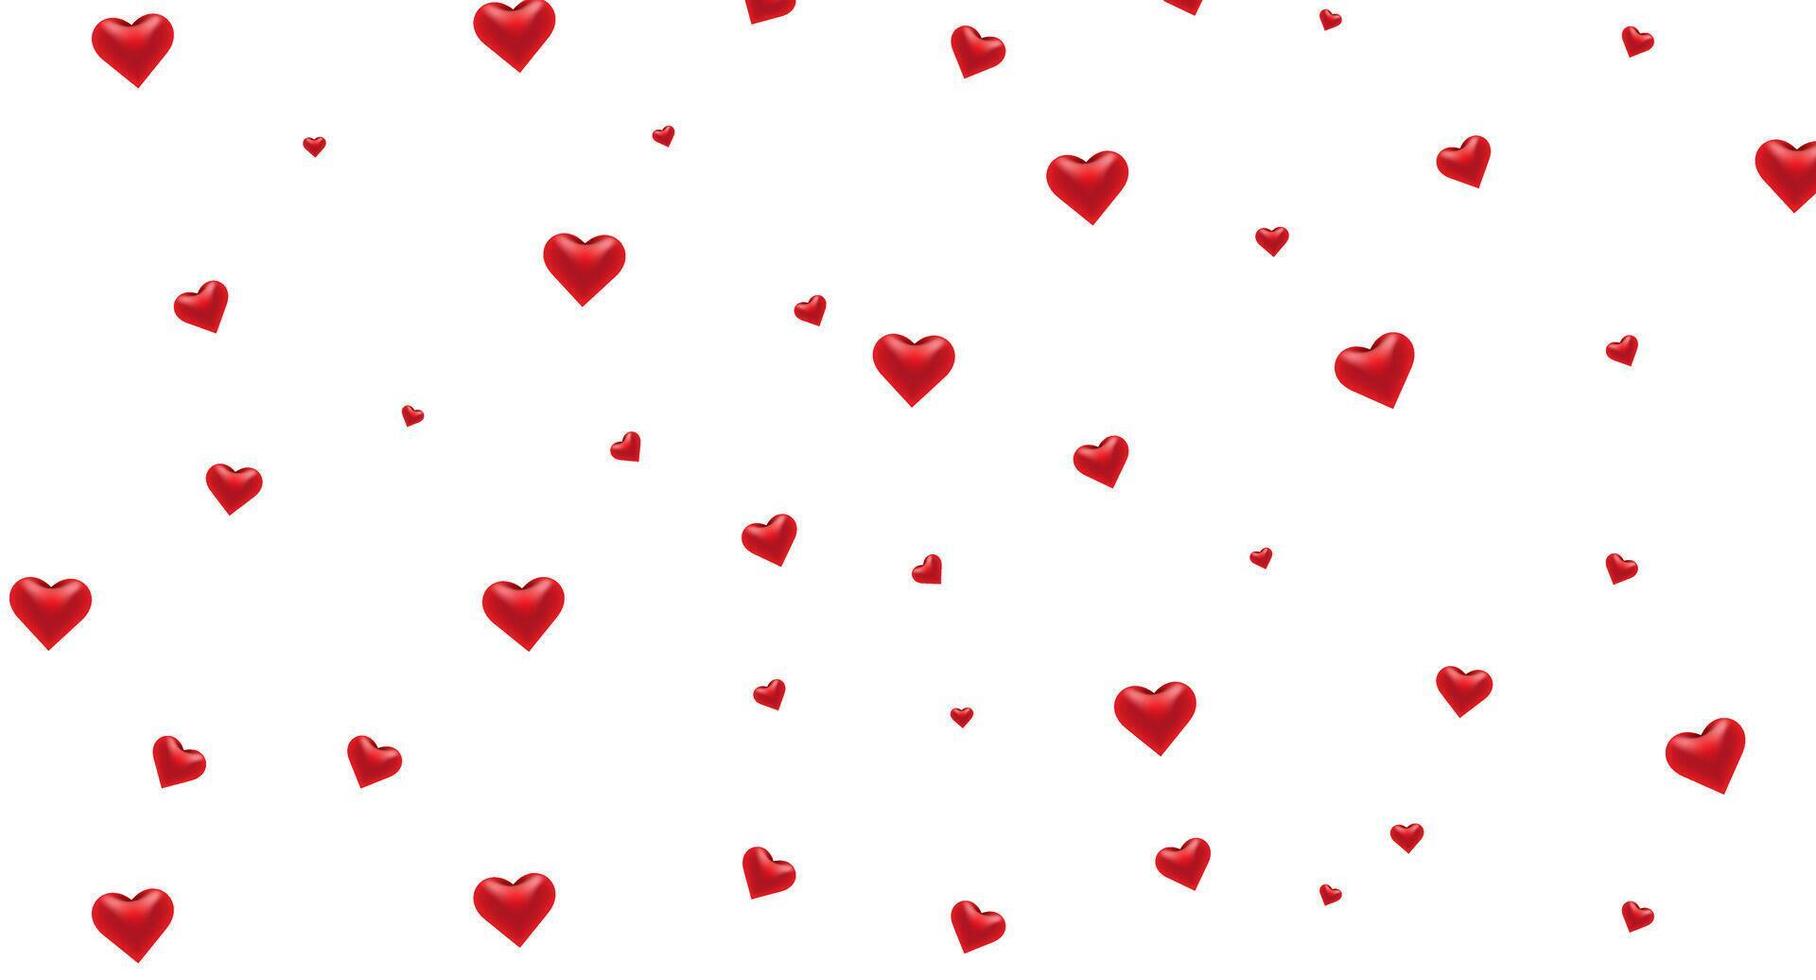 patroon rood realistisch harten. vector illustratie van metaal hart gevormd. ideaal voor luxe, romantisch, en liefde ontwerp